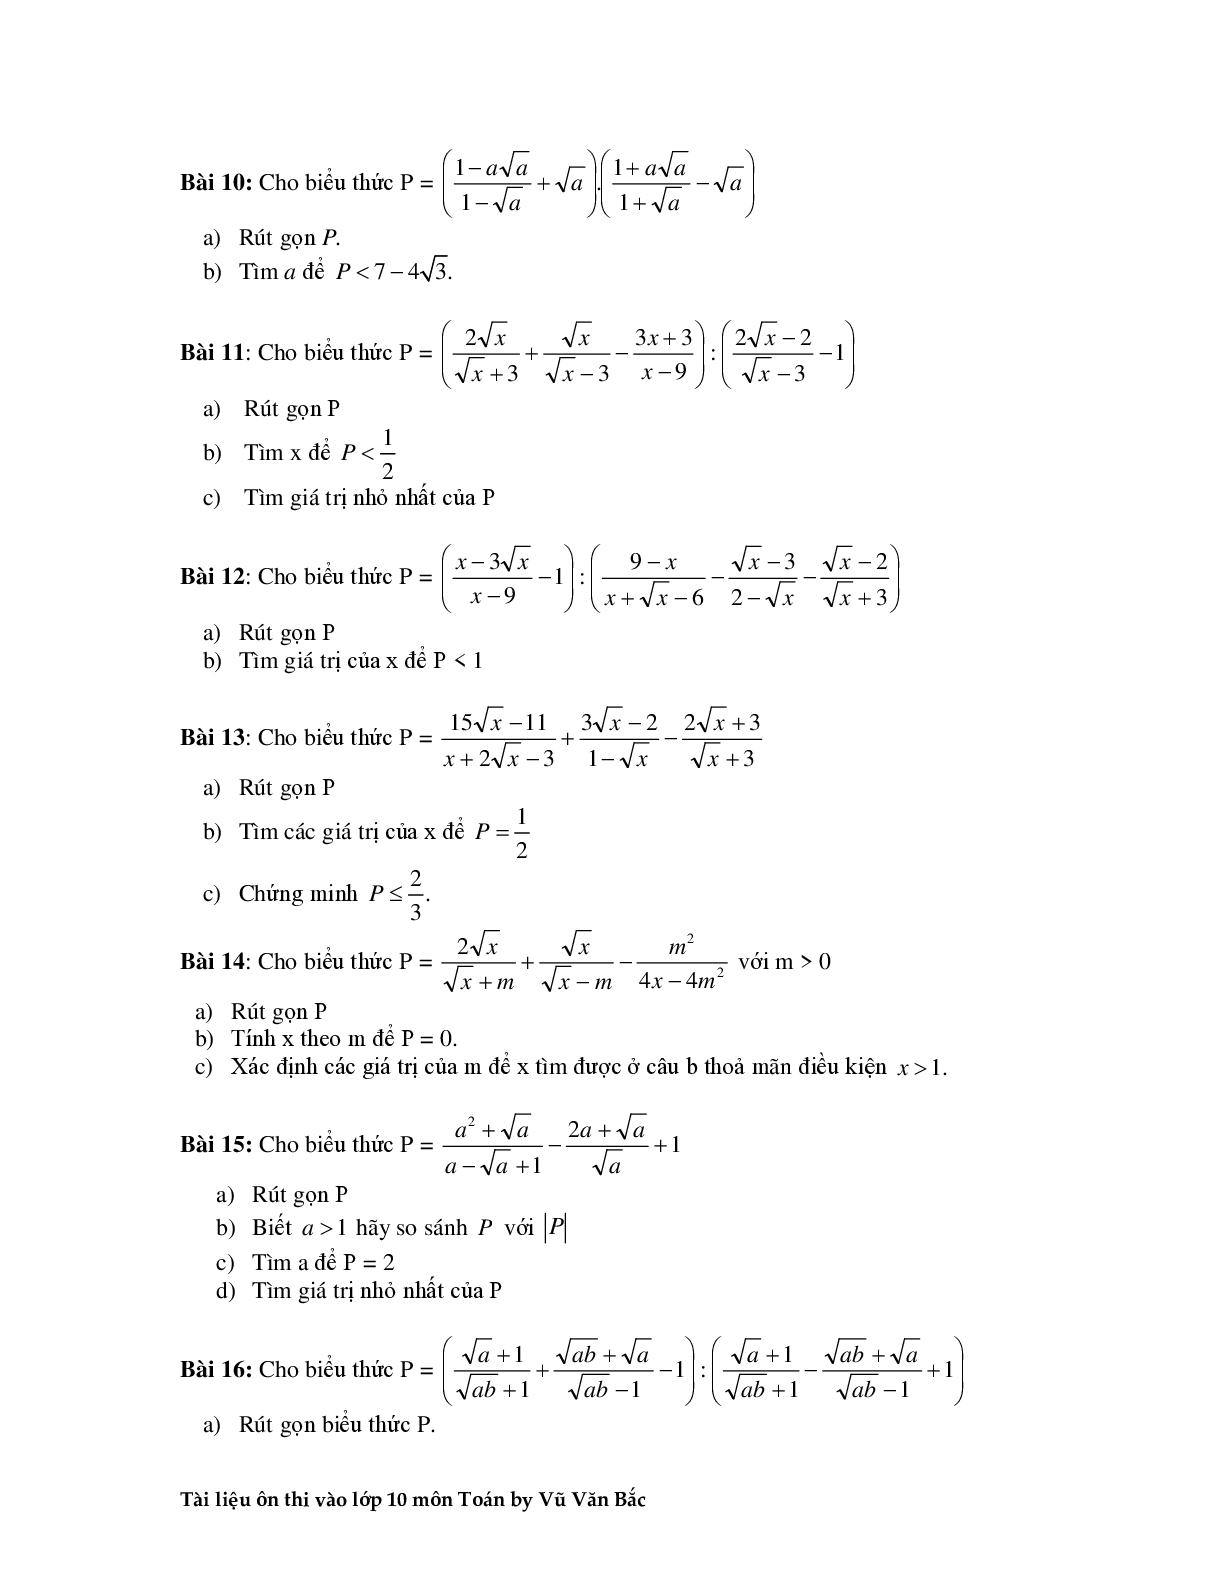 Tài liệu ôn thi vào lớp 10 môn toán (trang 5)